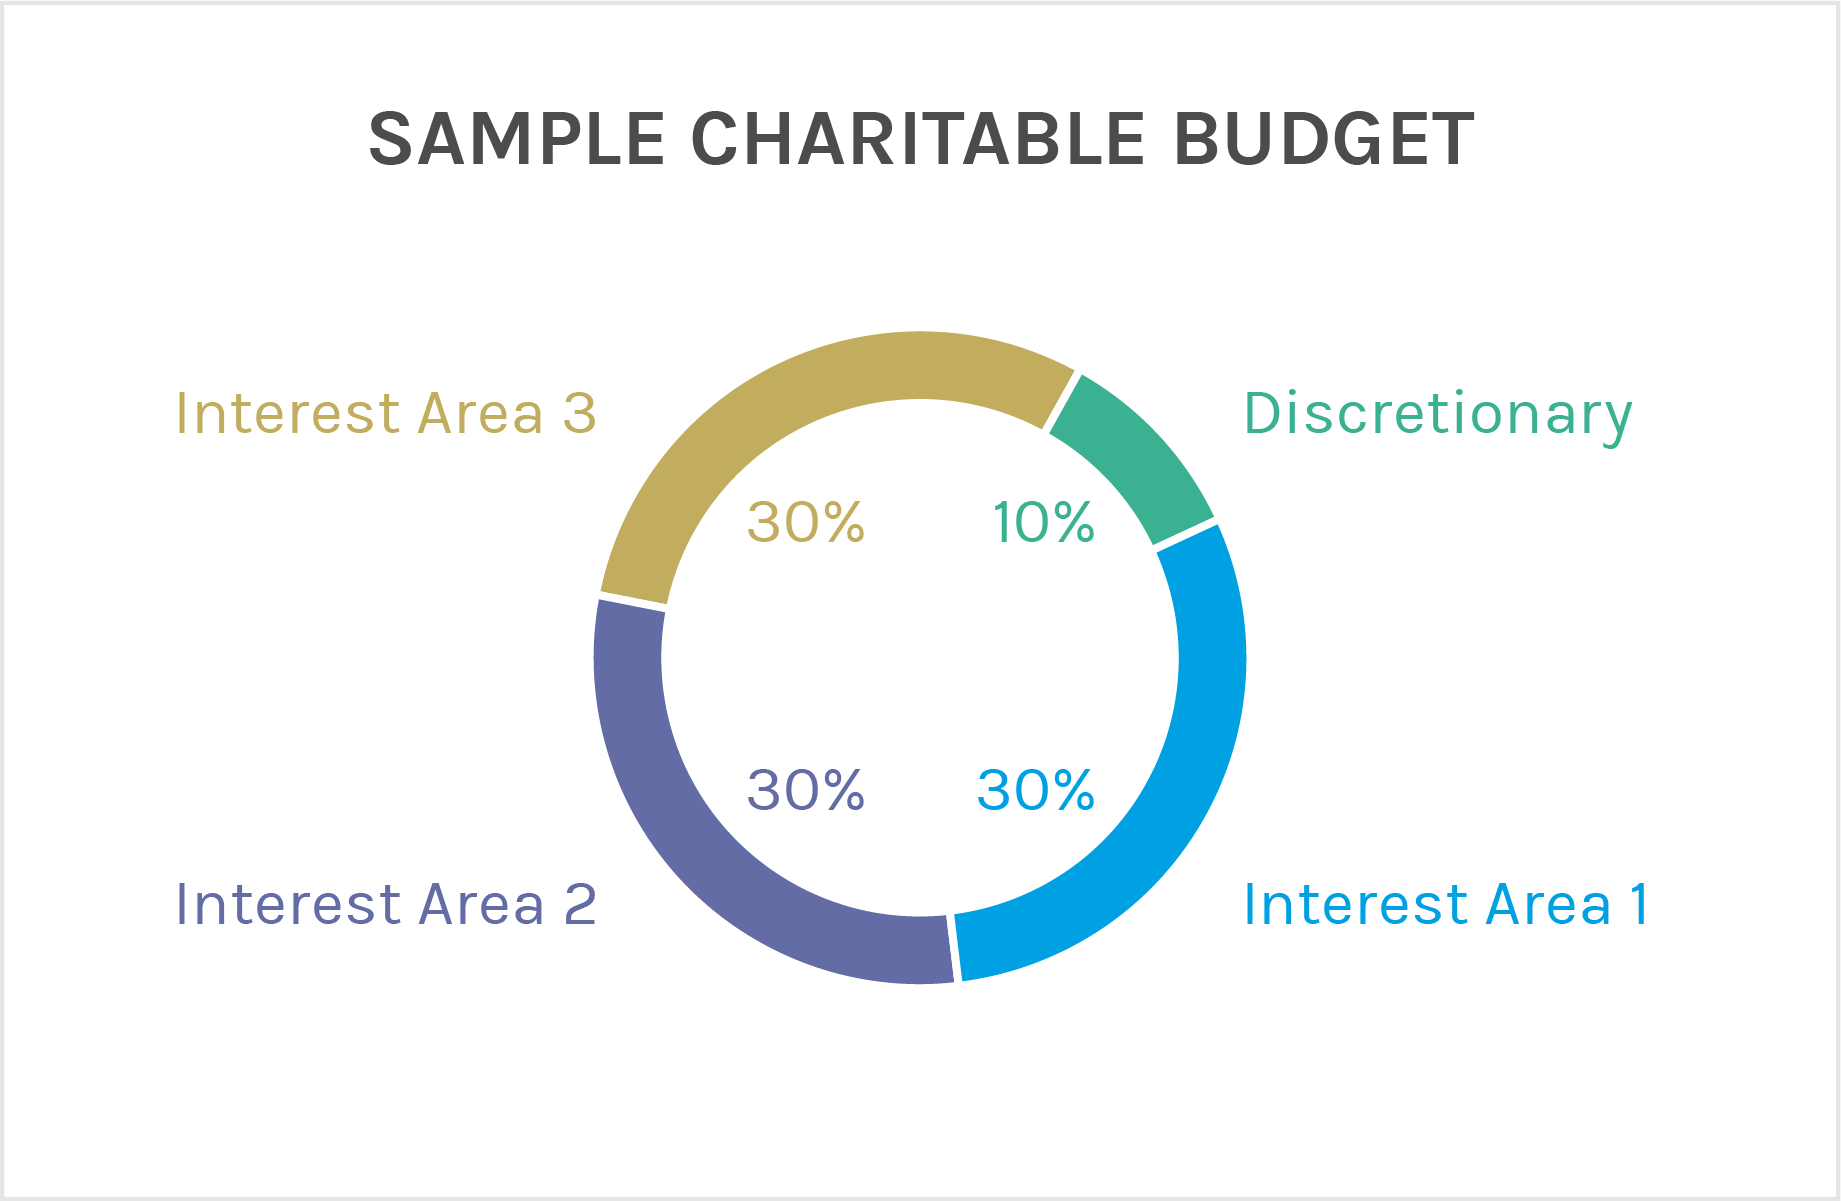 慈善预算样本派图第一段利息区130%第二段利息区230%第三段利息区330%第四段裁量权10%